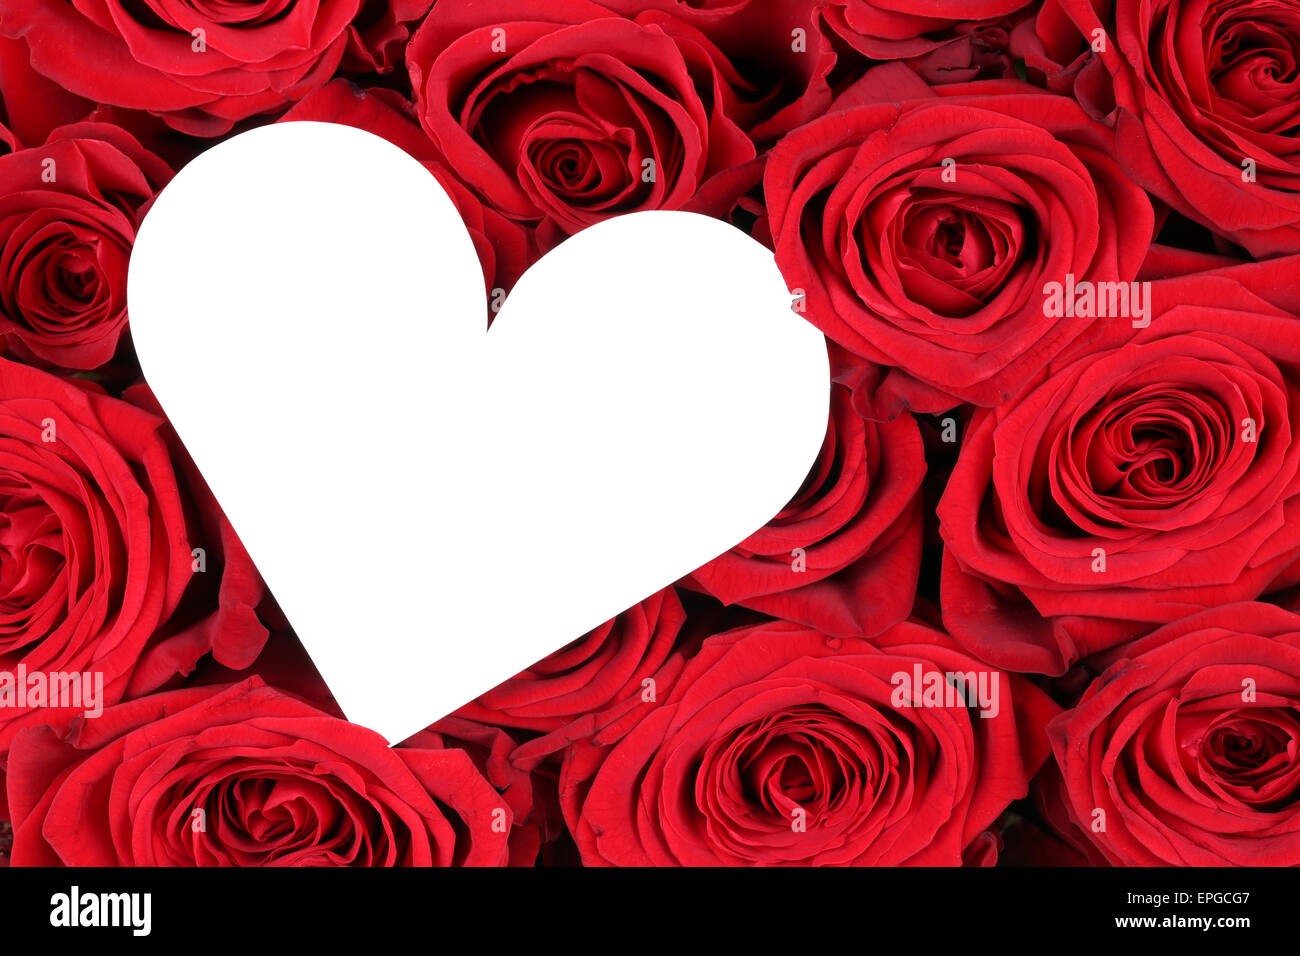 Rote Rosen mit Herz als Zeichen der liebe zum Valentinstag Foto de stock